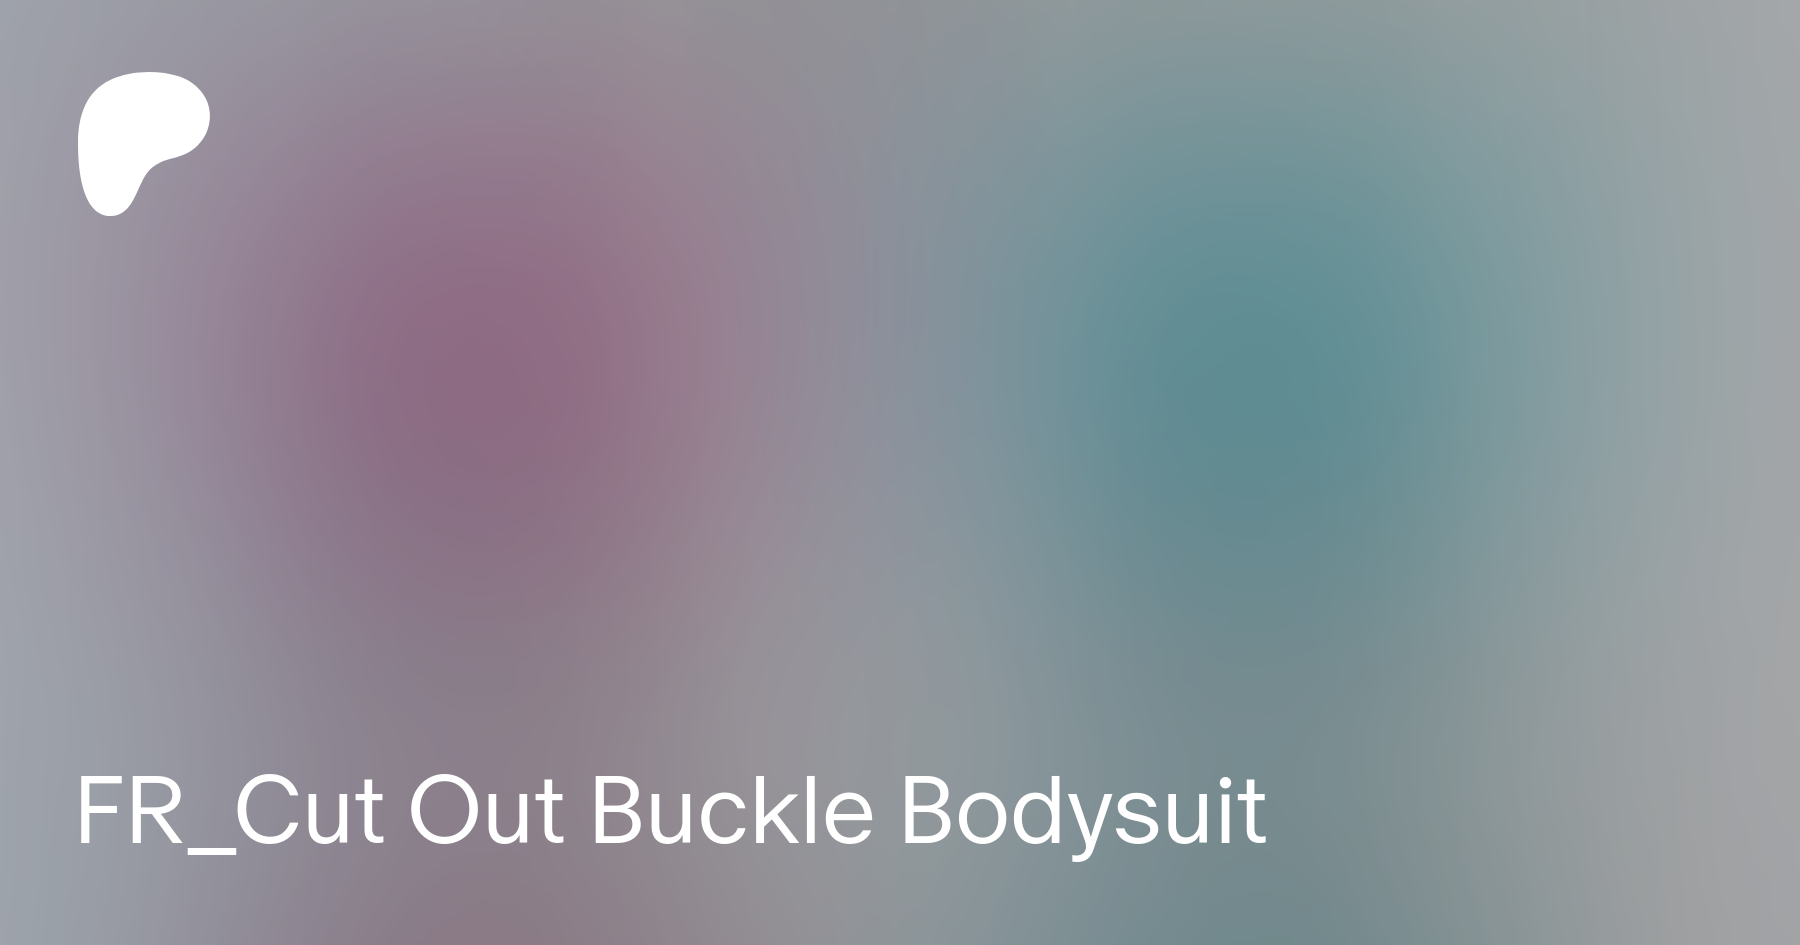 Cut Out Buckle Bodysuit